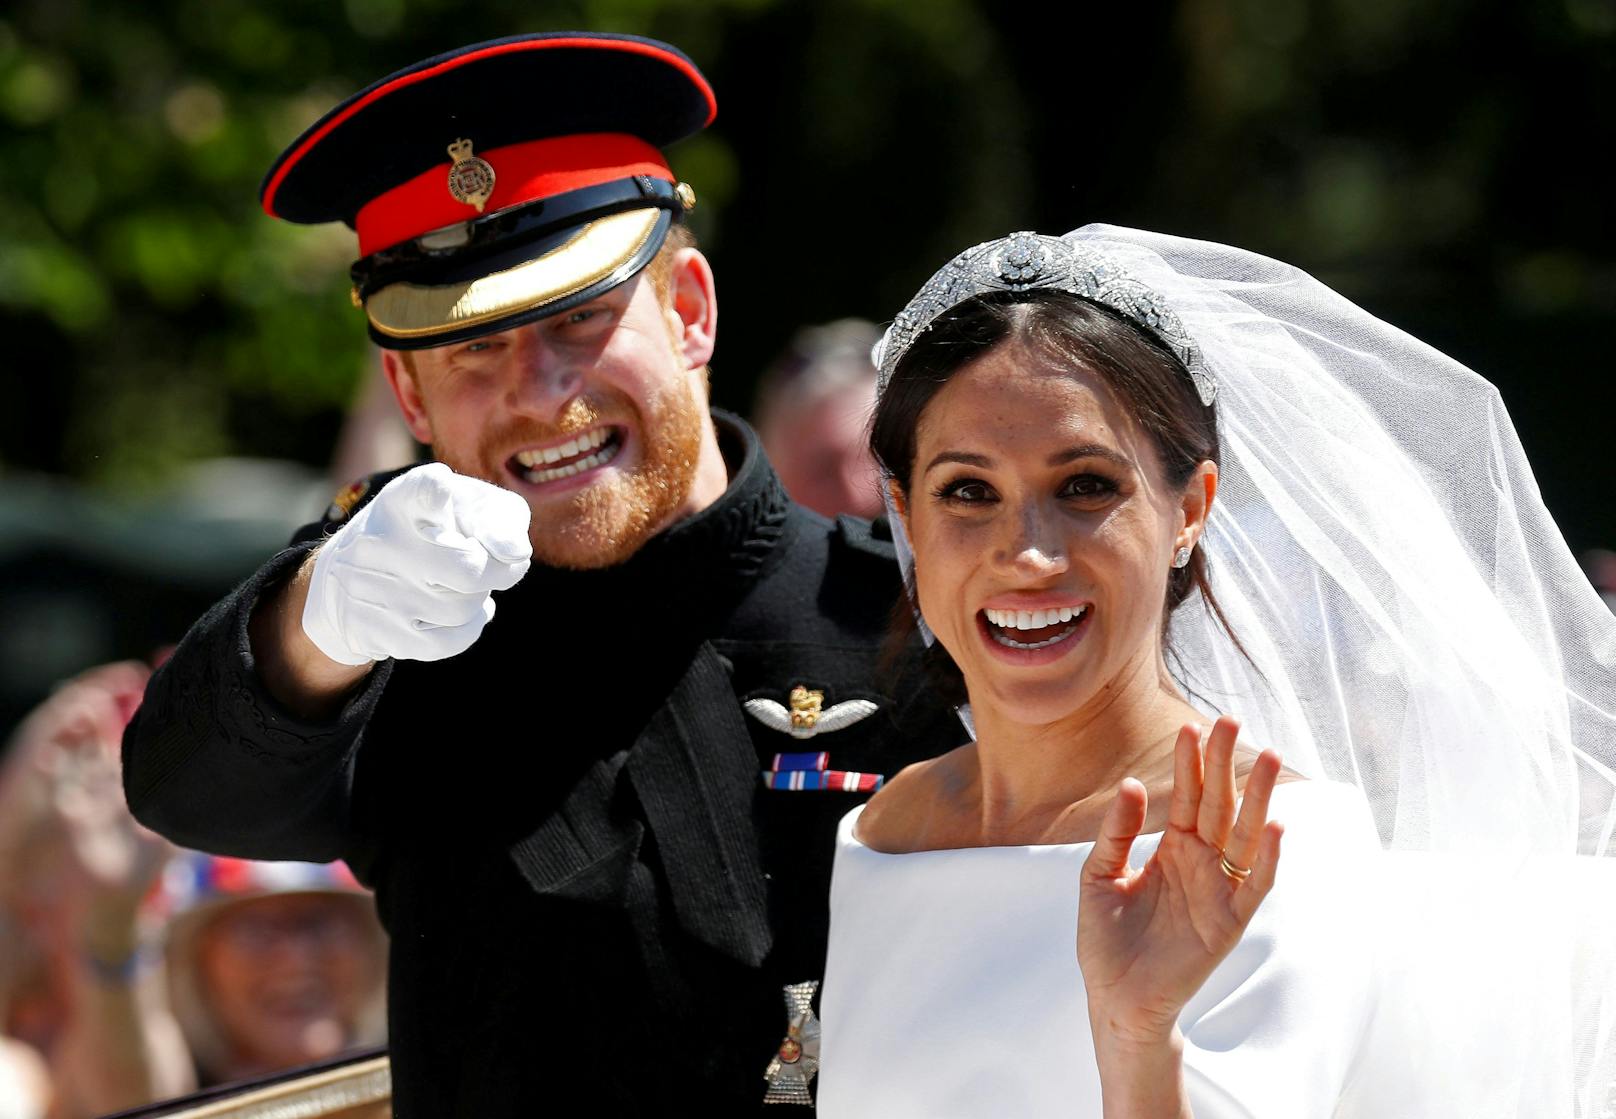 Prinz Harry und Meghan Markle heirateten im Mai 2018. Obwohl die Hochzeit ein öffentliches Spektakel war, wurden hinter den Kulissen Spannungen zwischen Meghan und Kate vermutet.